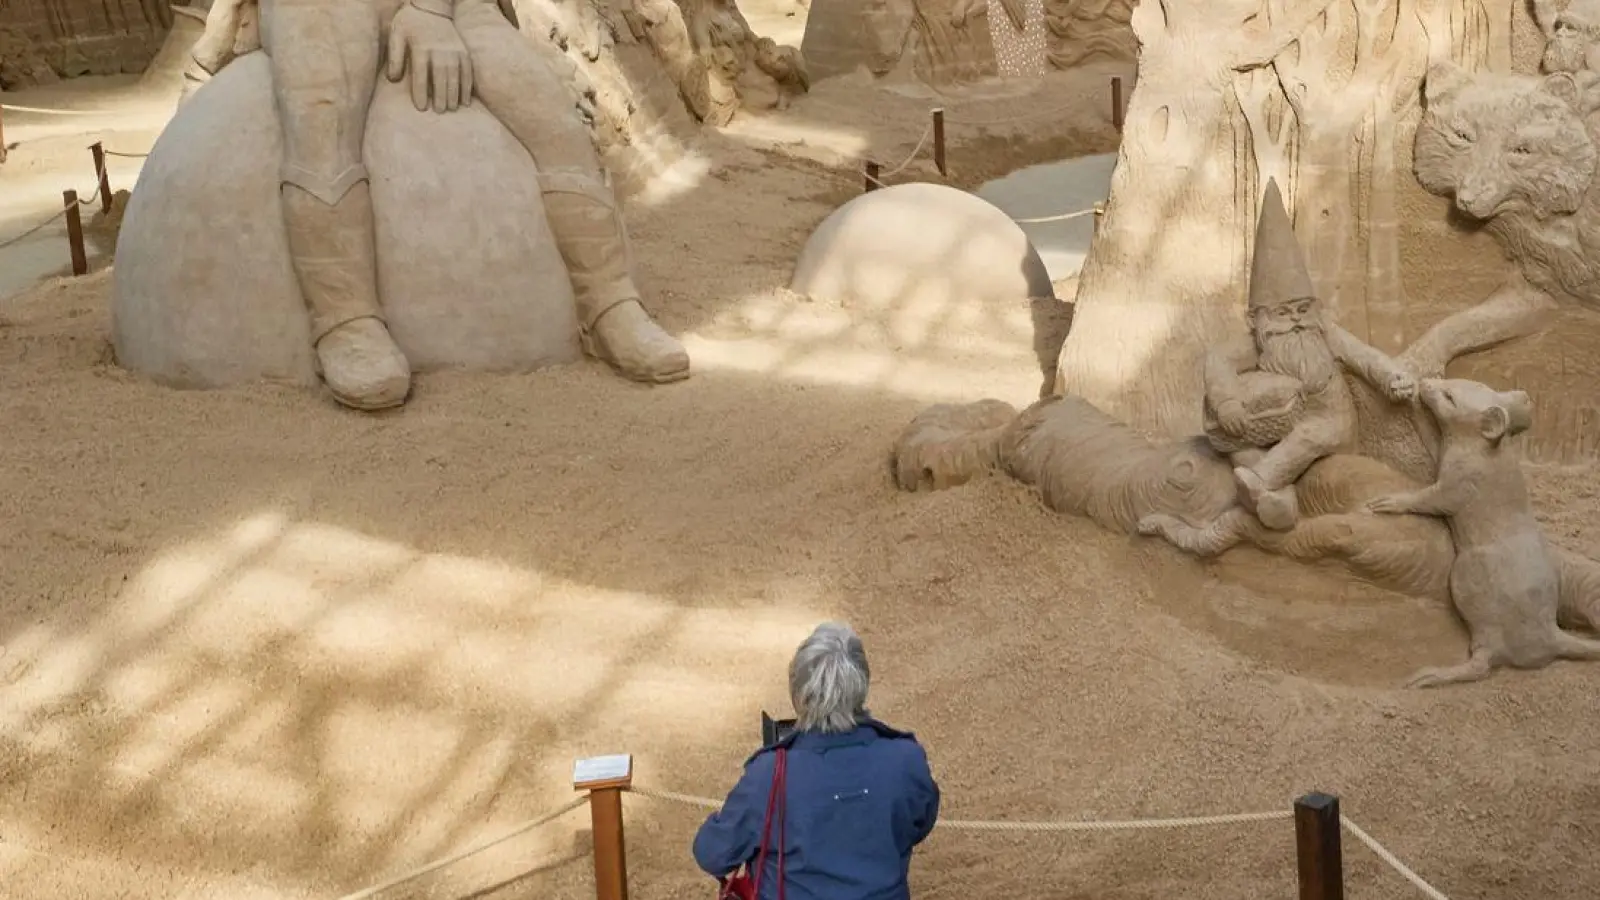 Die Sandskulpturen-Ausstellung in Travemünde ist bis zum 3. November geöffnet. (Foto: Georg Wendt/dpa)